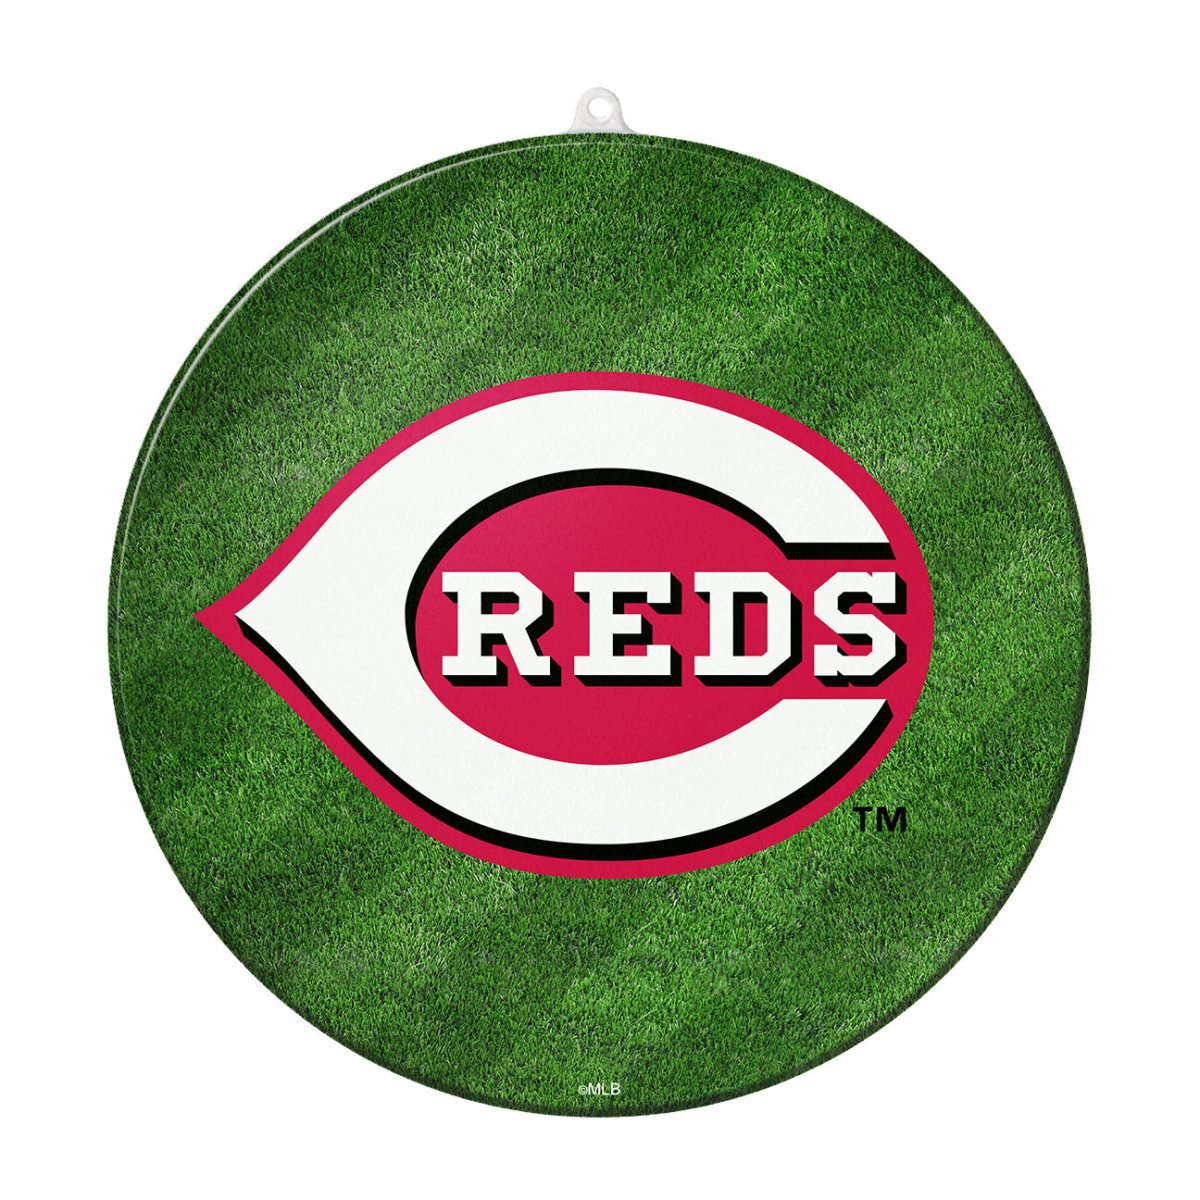 Cincinnati Reds: Sun Catcher Ornament